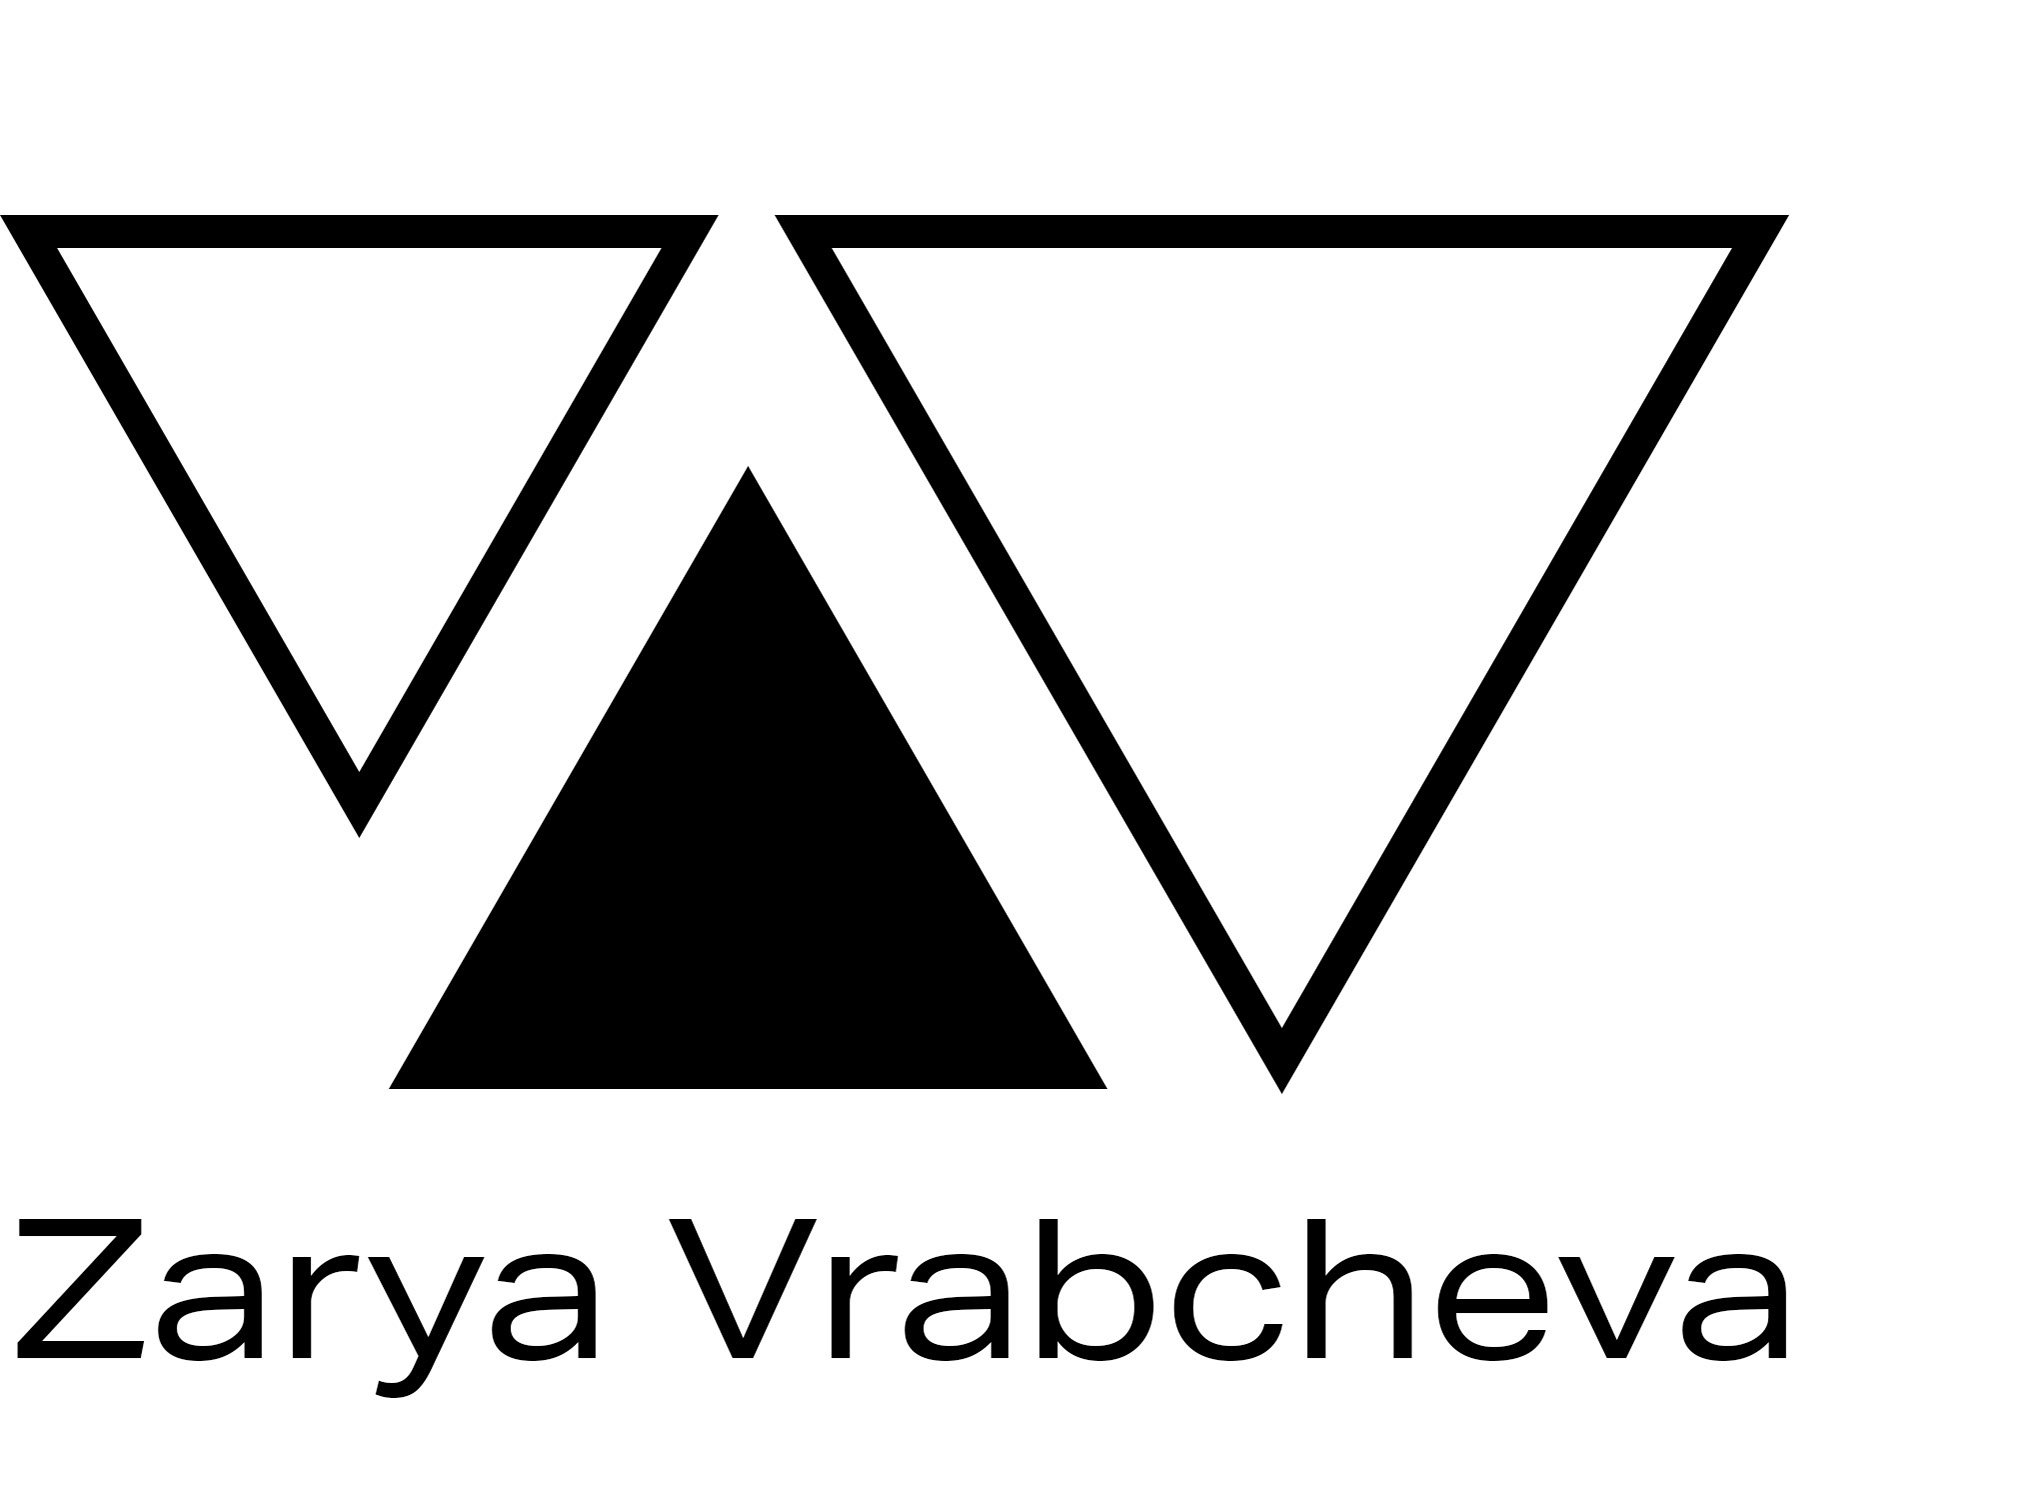 Zarya Vrabcheva